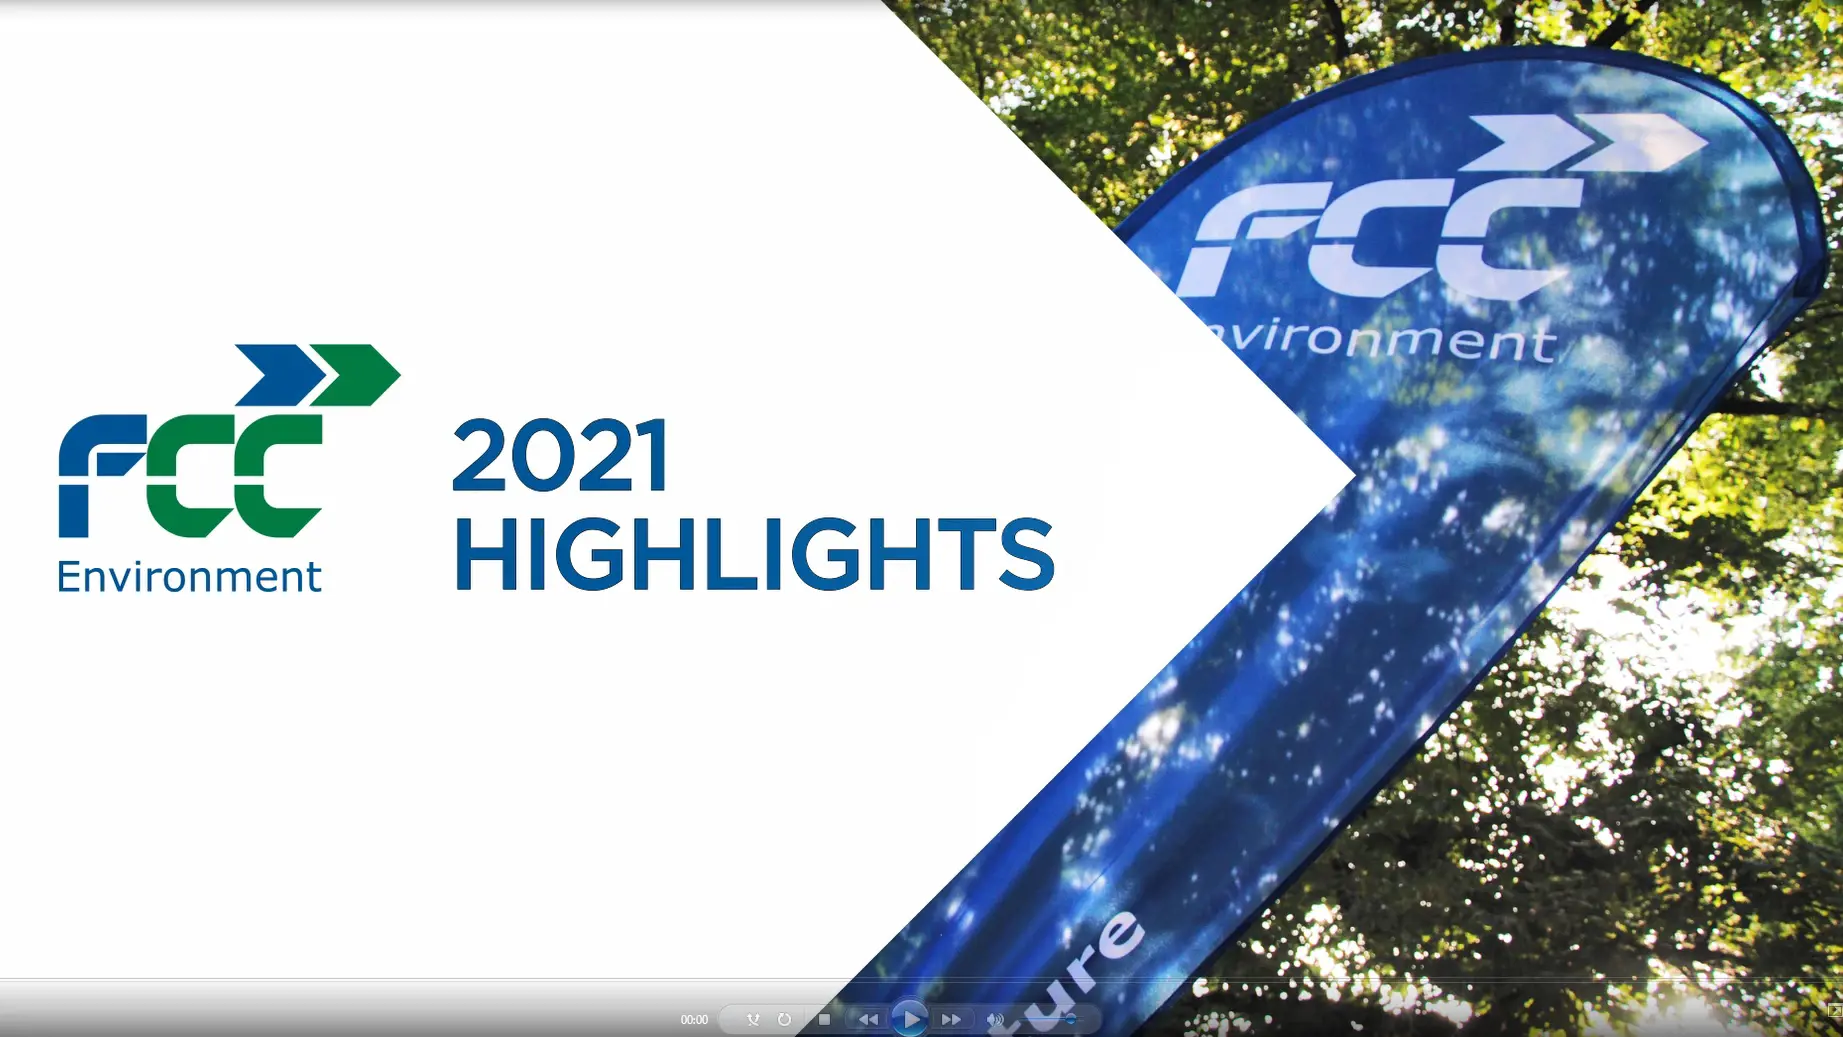 FCC Highlights 2021